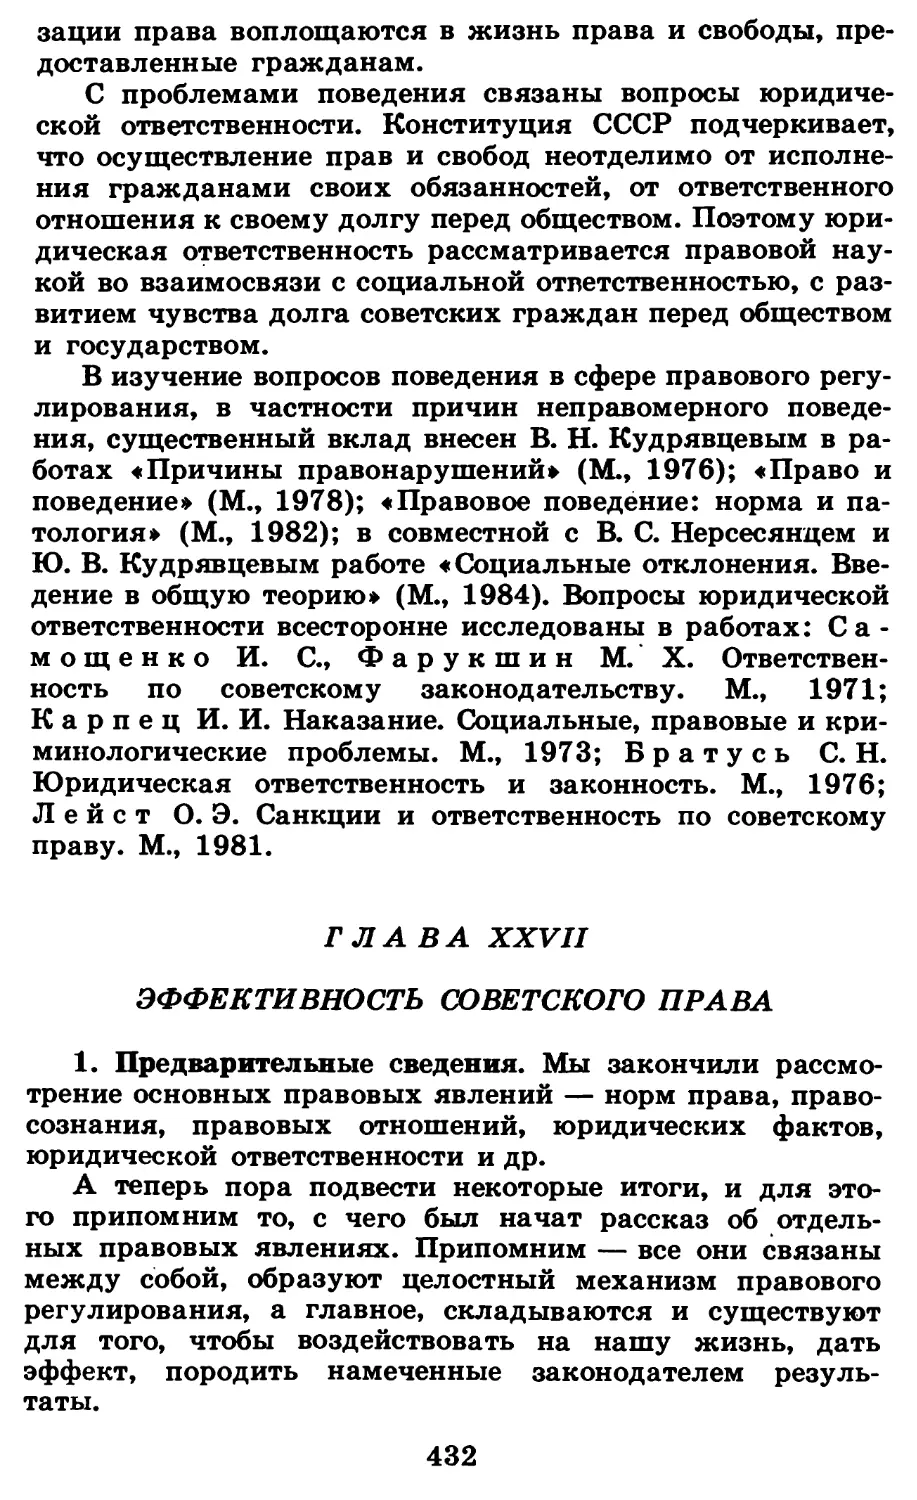 Глава ХХVII. Эффективность советского права